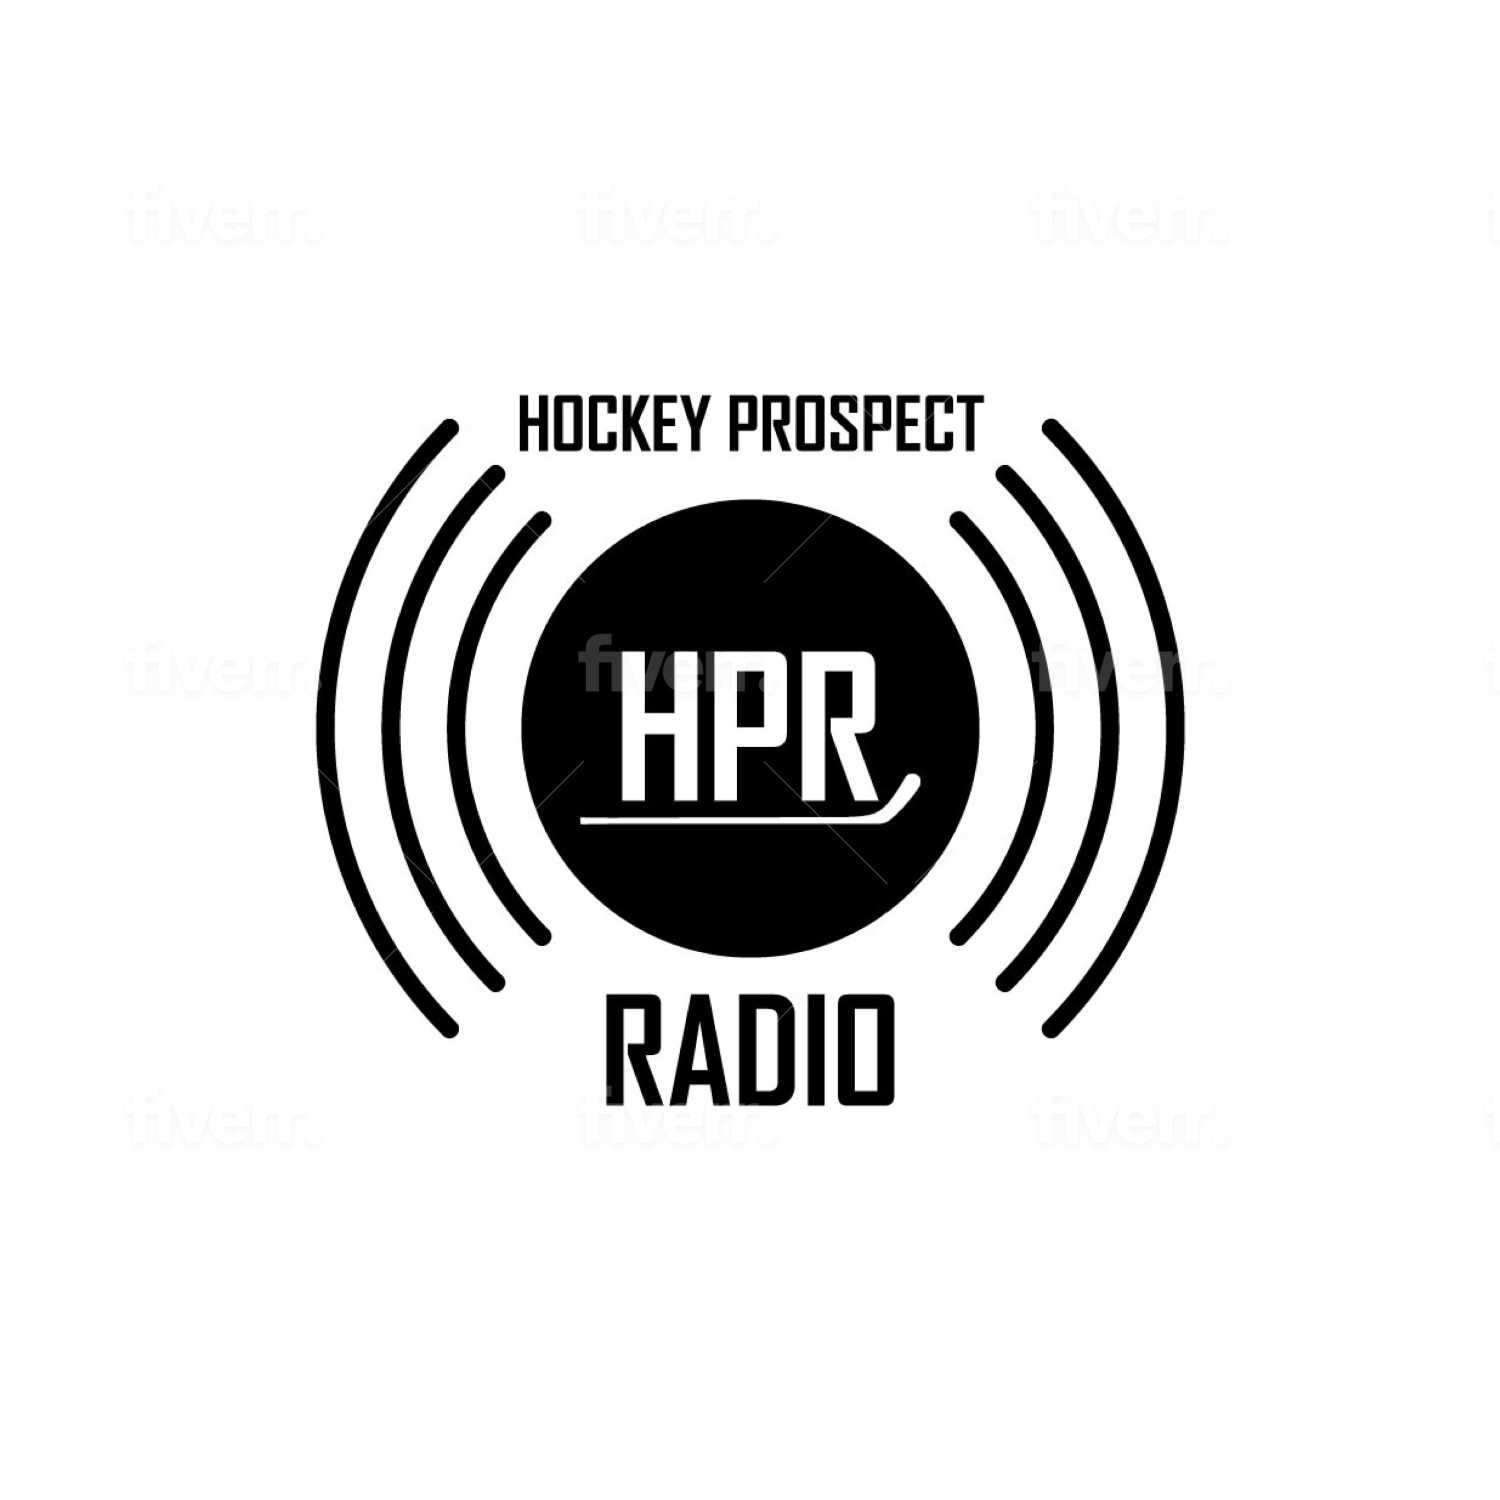 HPR - Season 19 - Episode 14- Segment 6 - WJC Player Development with Pat Malloy